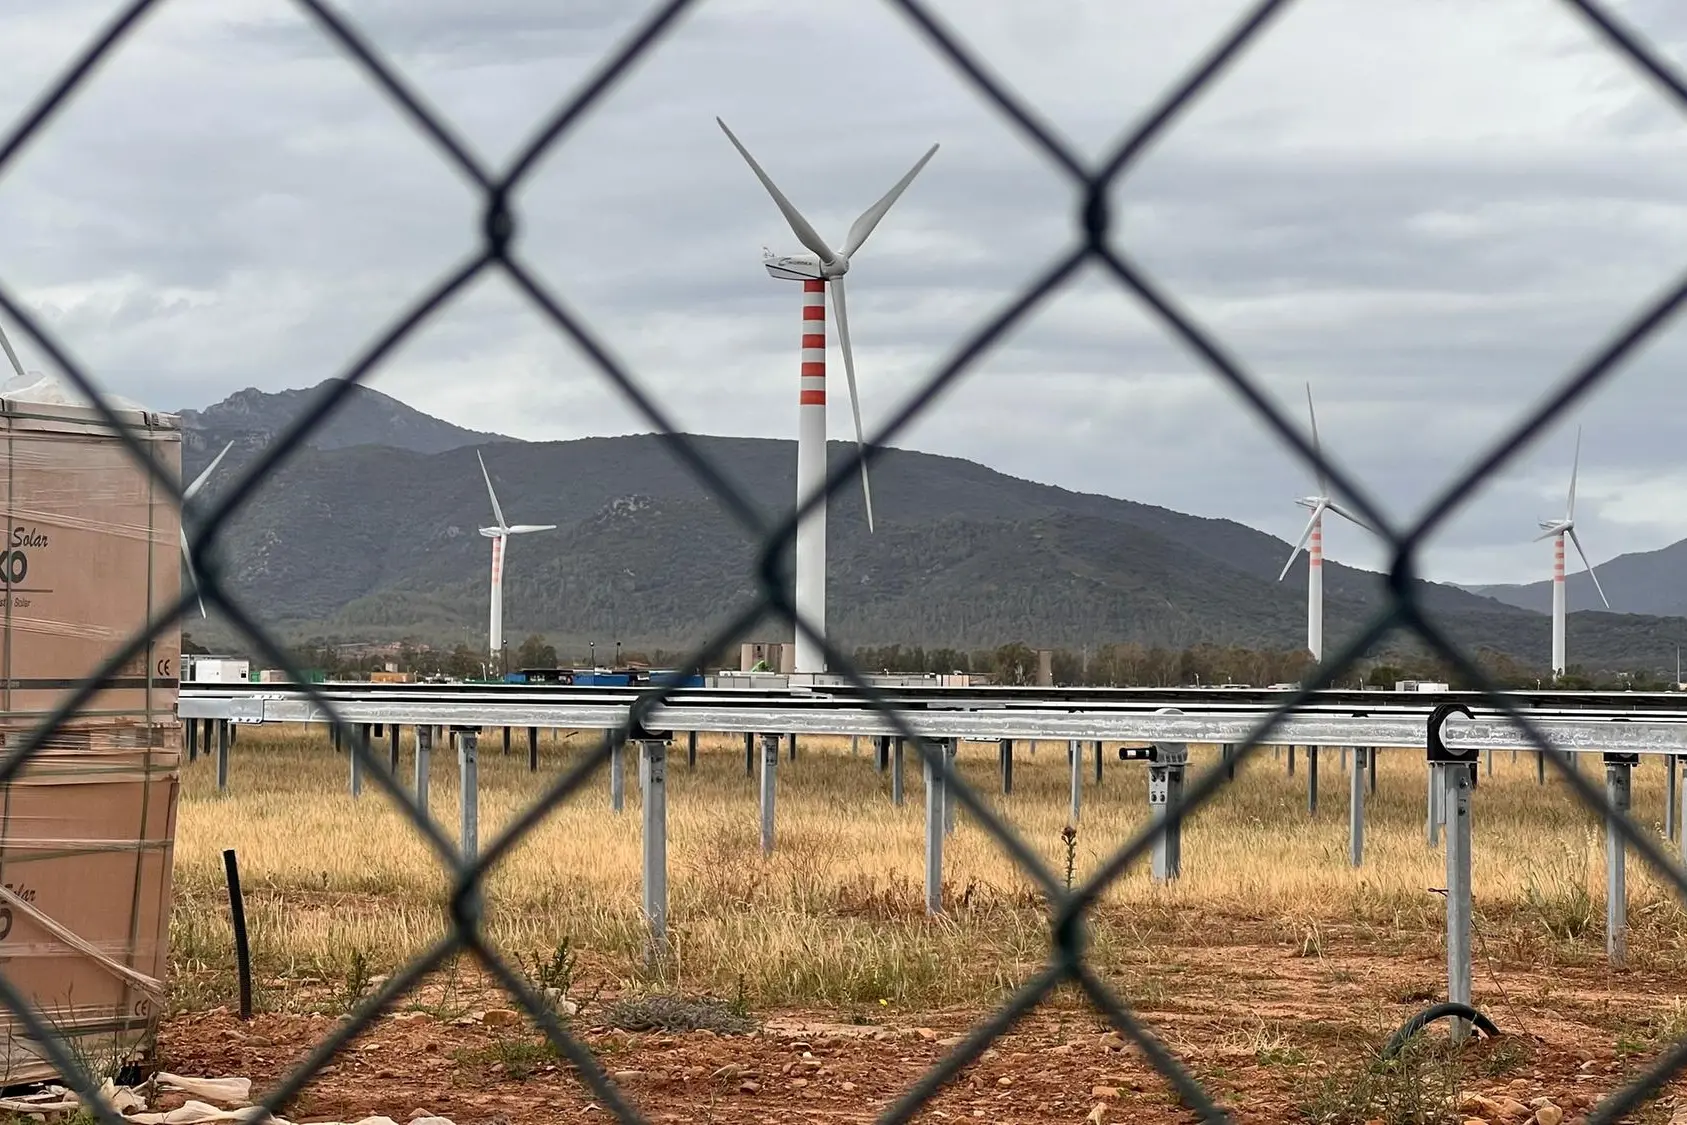 Immagine simbolo dell'invasione energetica della Sardegna; Monte Arcosu, Uta-Assemini: terra recintata dalla speculazione per le centrali eoliche e fotovoltaiche (L'Unione Sarda)